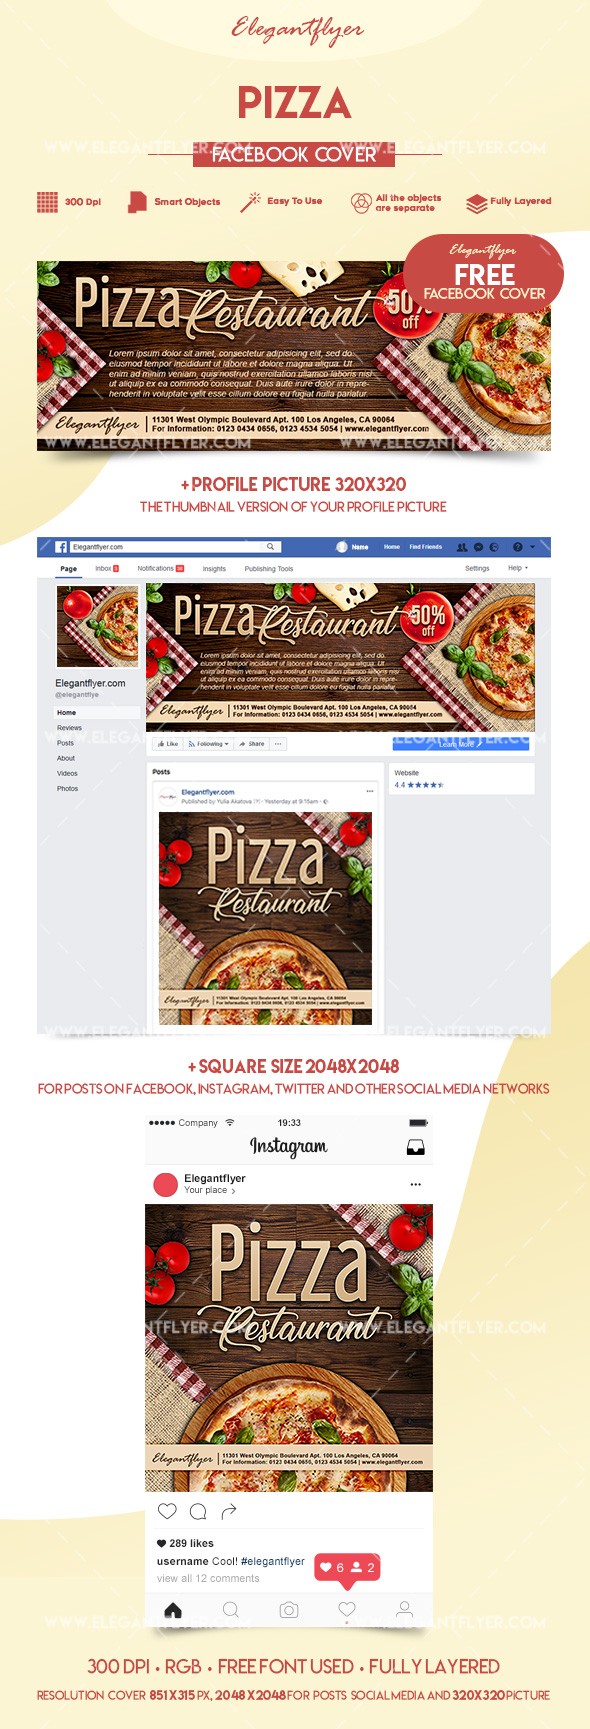 Pizza Facebook by ElegantFlyer